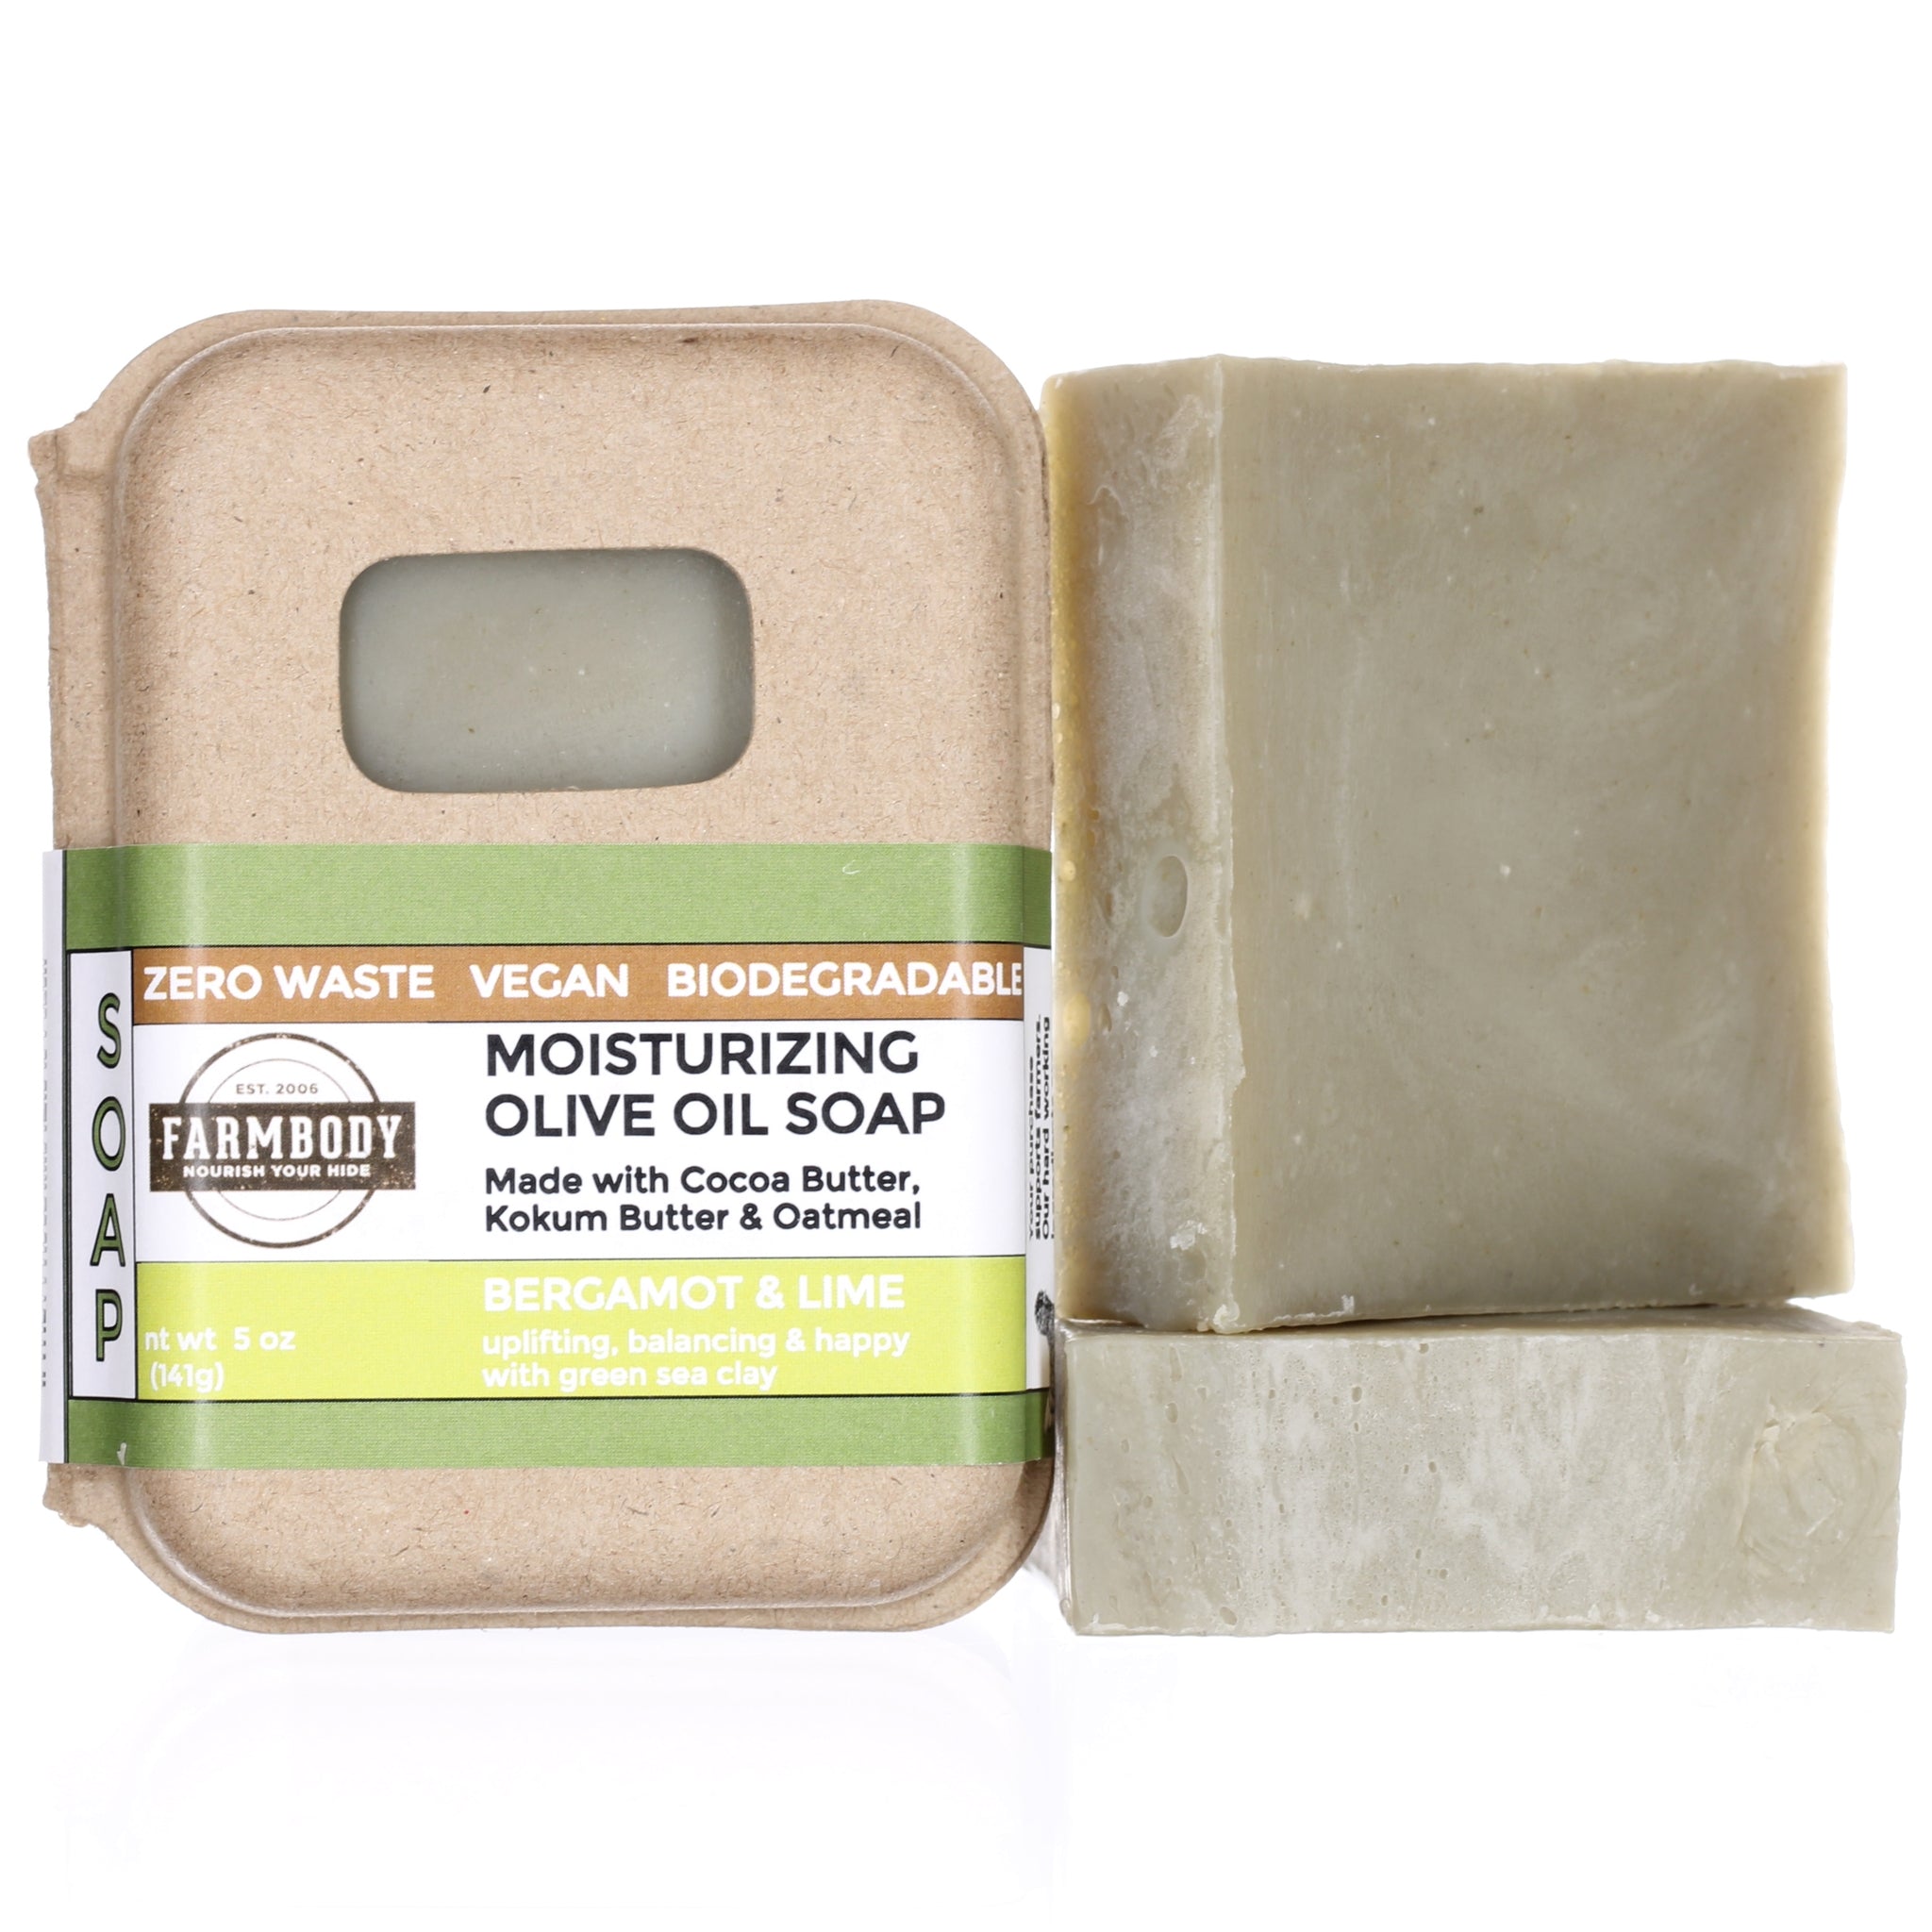 Moisturizing Vegan Olive Oil Soap Benefits for Dry Skin | Bergamot Lime - Farmbody